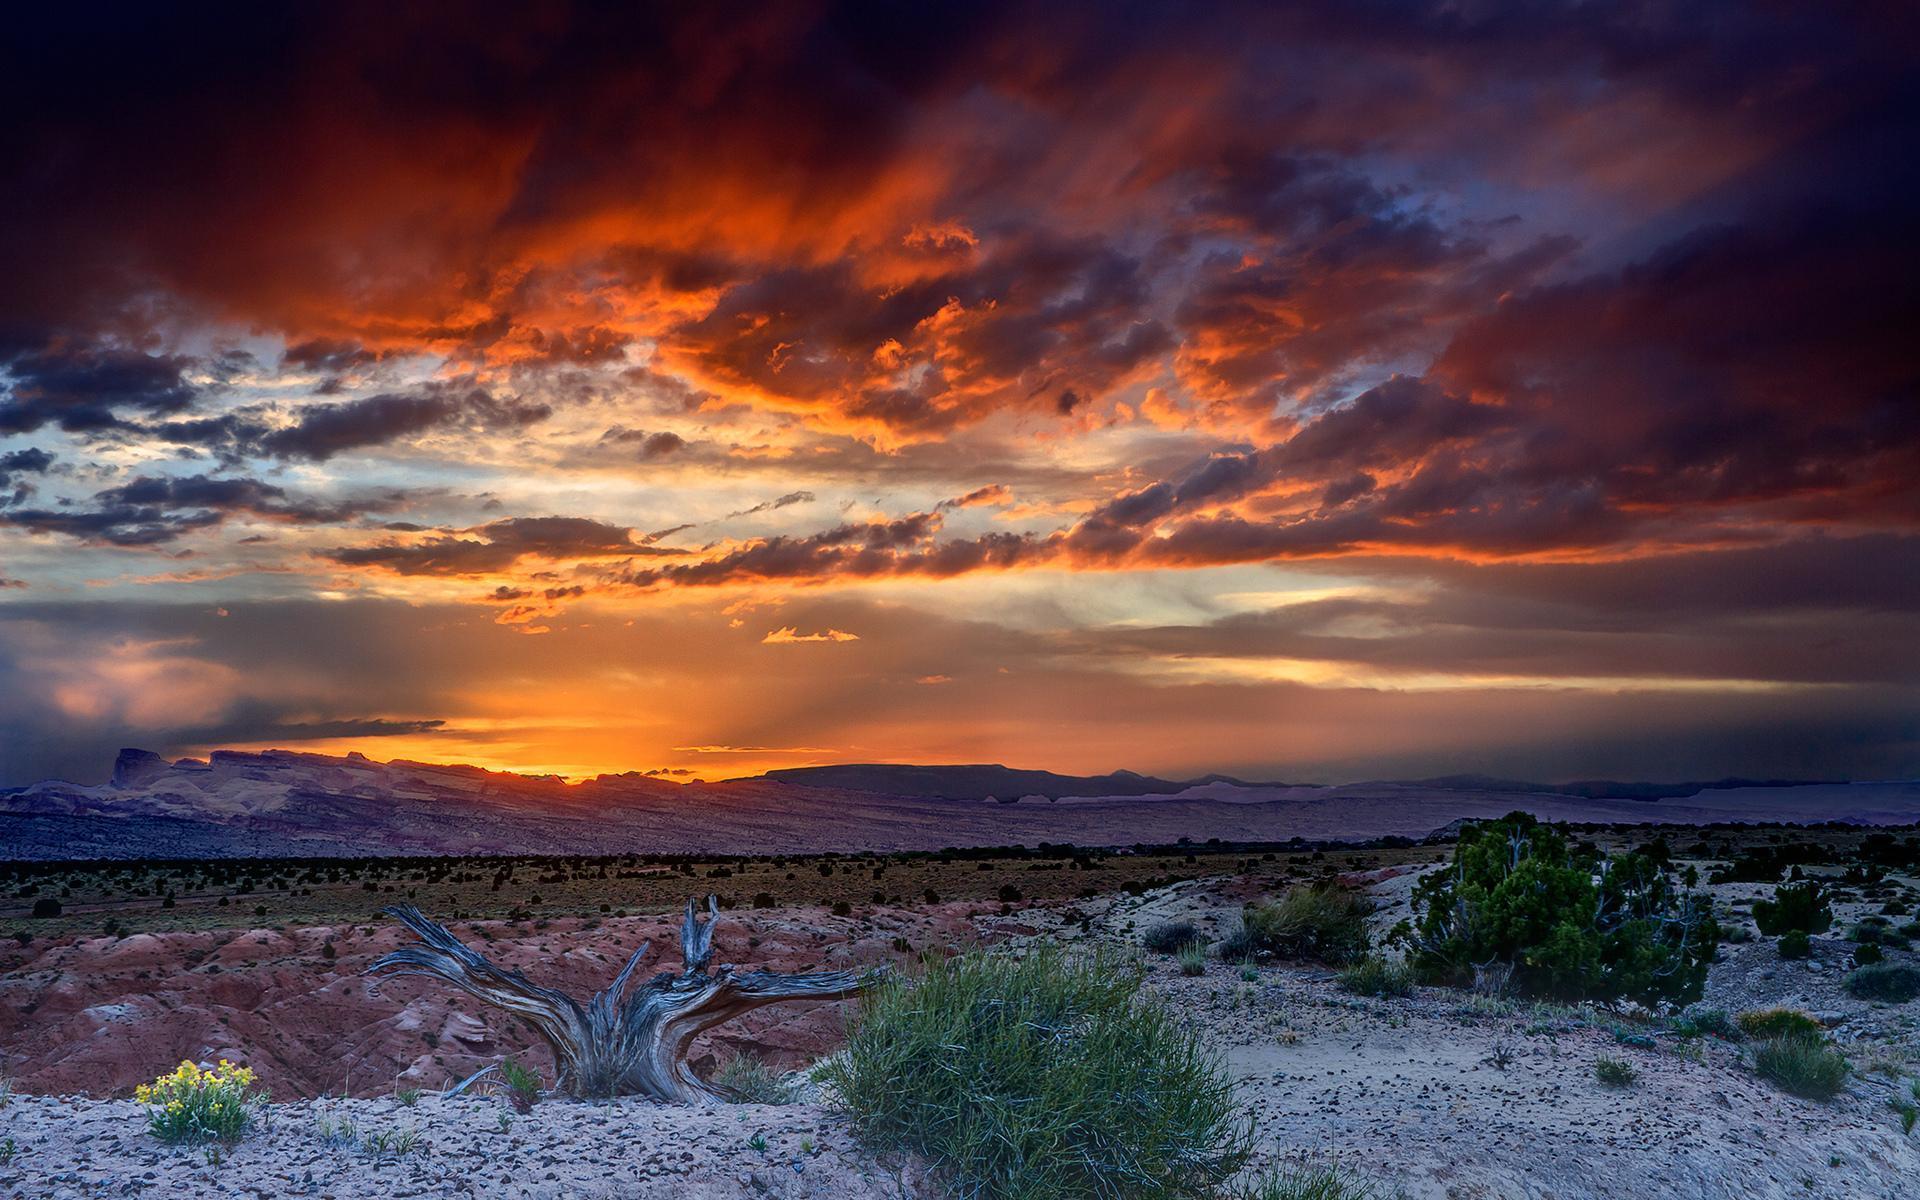 Desert Sunset Wallpapers - Top Free Desert Sunset Backgrounds